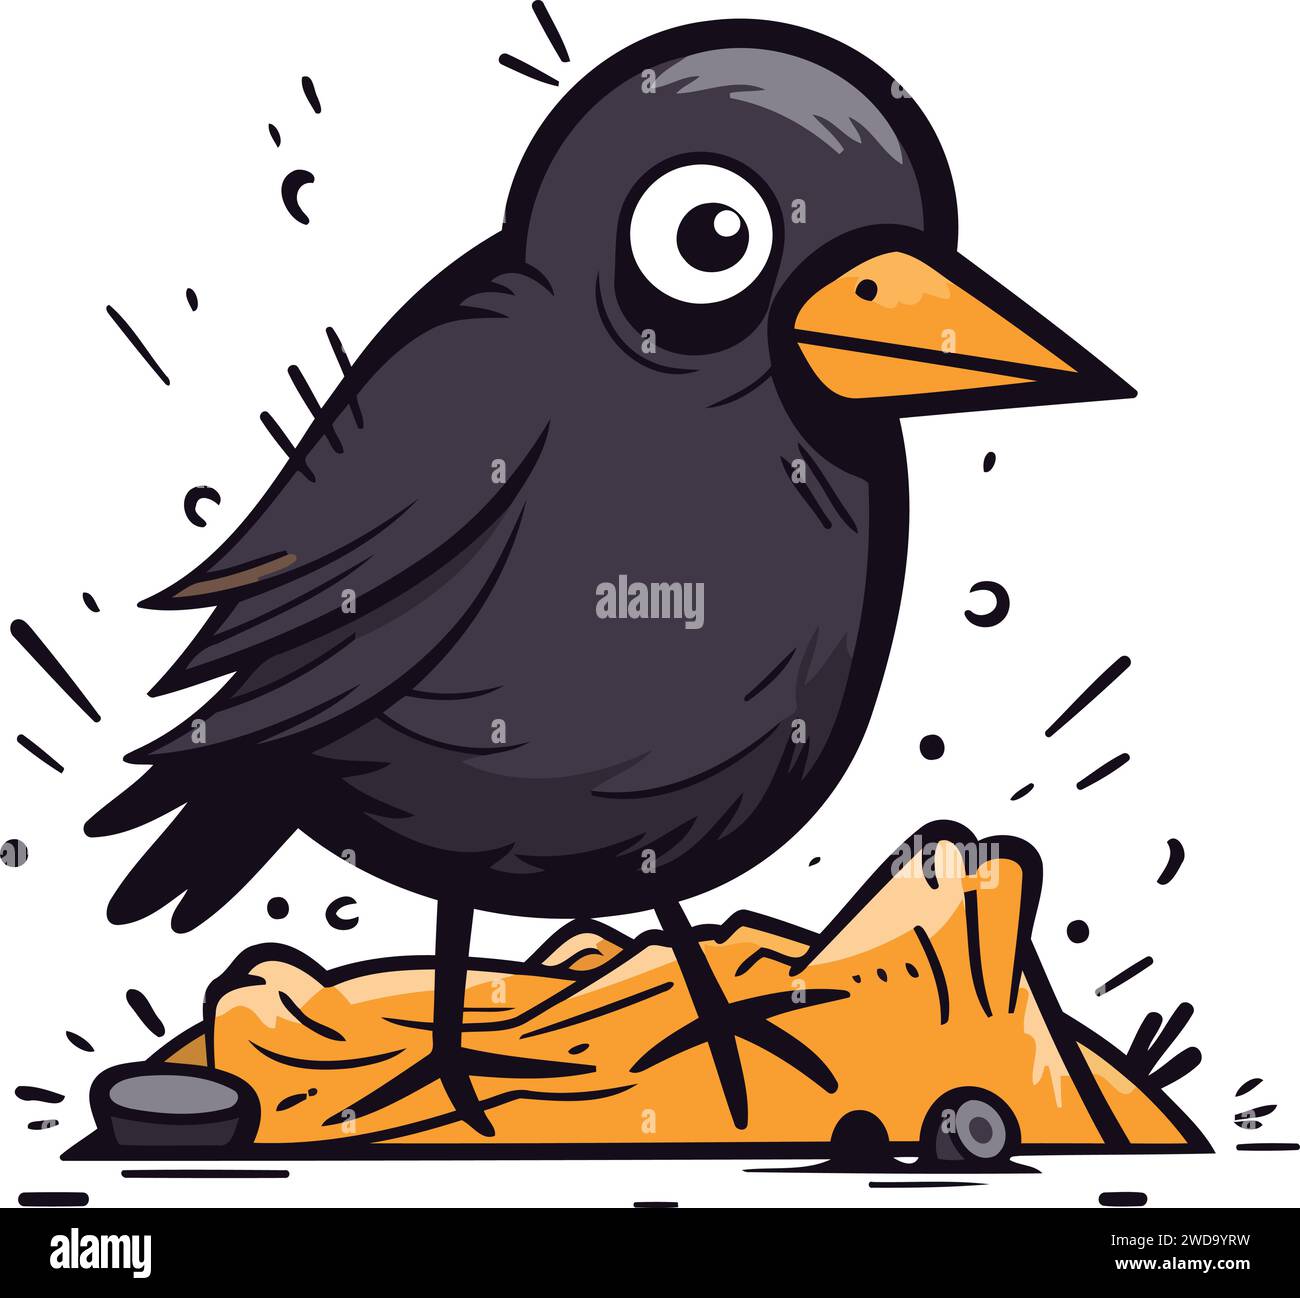 Simpatico uccello nero dei cartoni animati isolato su sfondo bianco. Illustrazione vettoriale. Illustrazione Vettoriale